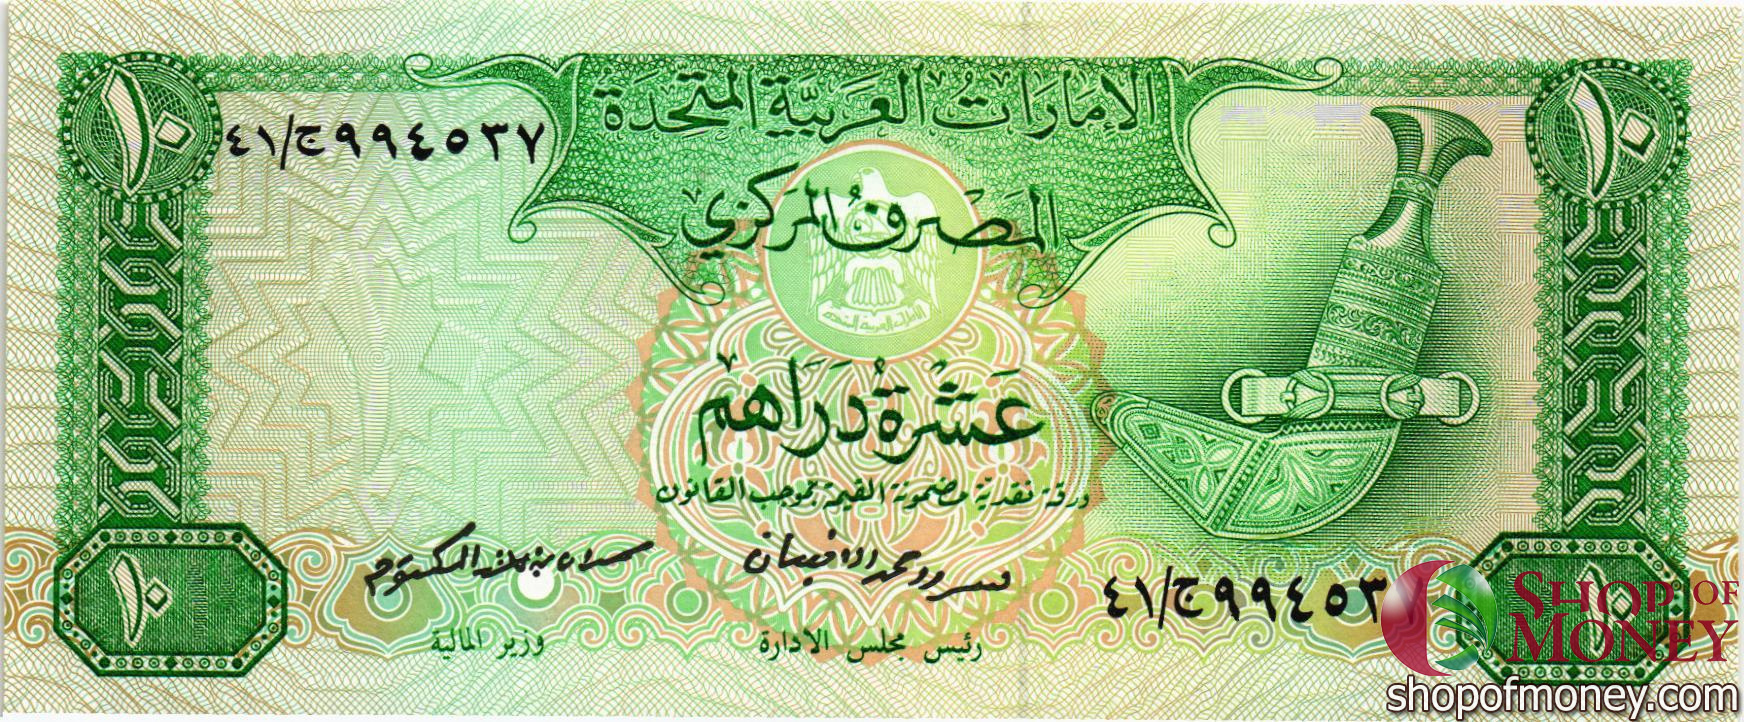 4500 дирхам. Арабские деньги. Арабские купюры. Арабские денежные знаки. Бумажные деньги арабов.